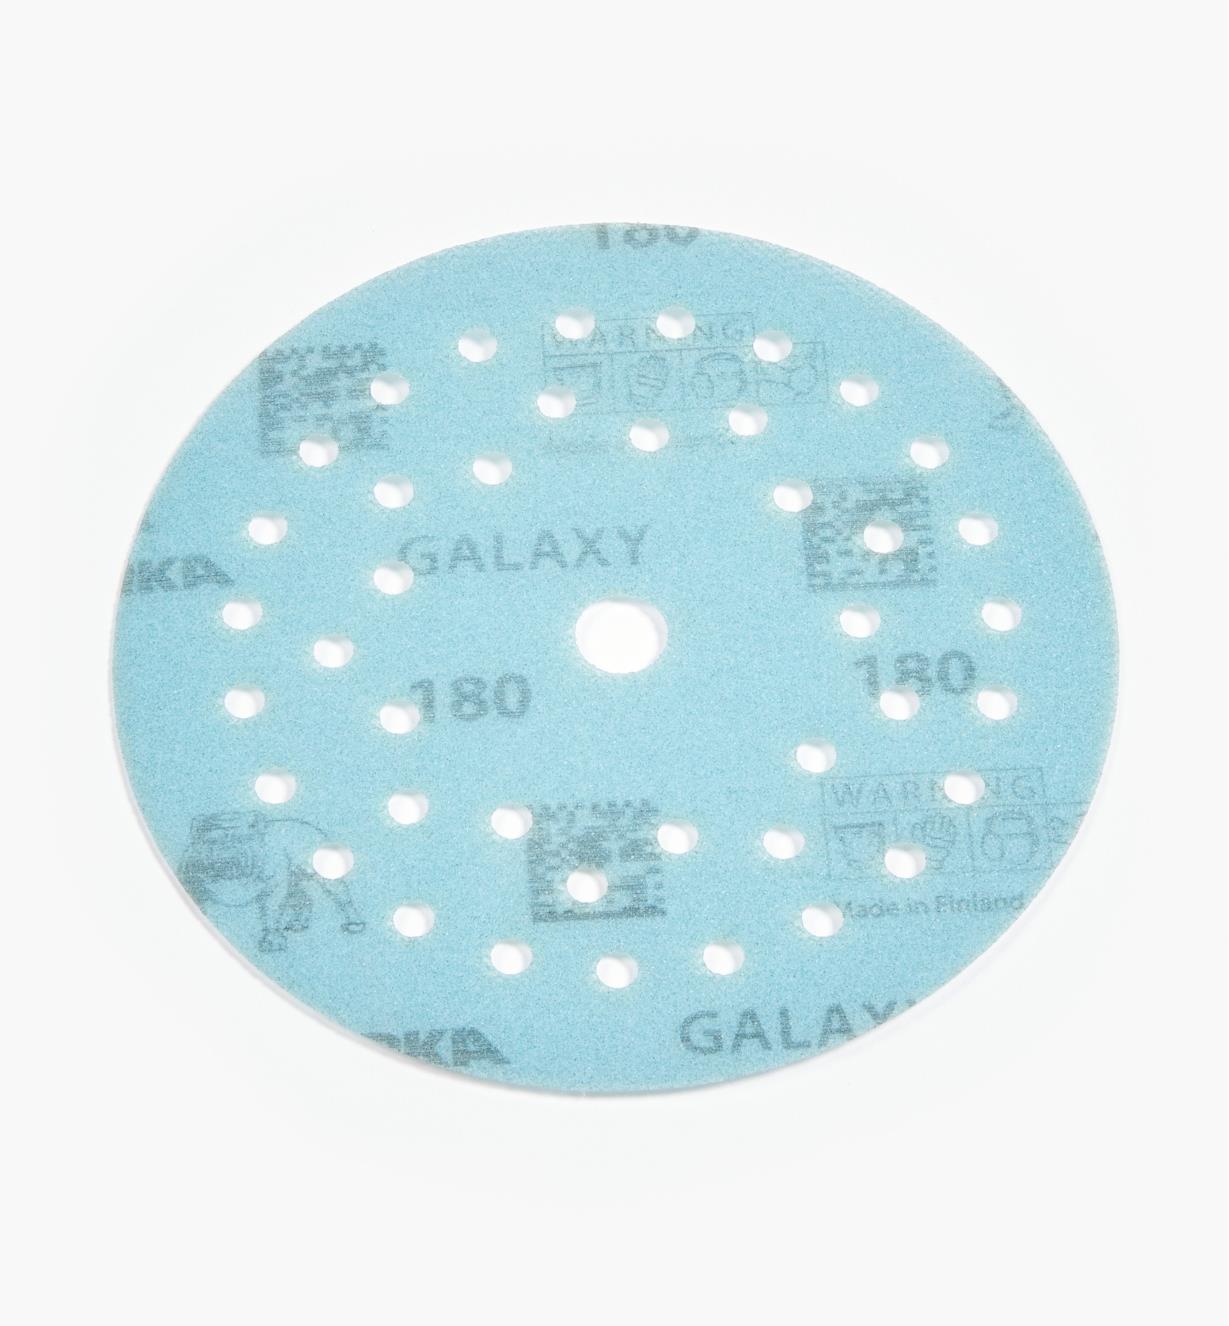 08K1346 - Disque abrasif autoagrippant Galaxy Multifit, 5 po, grain 180, l'unité